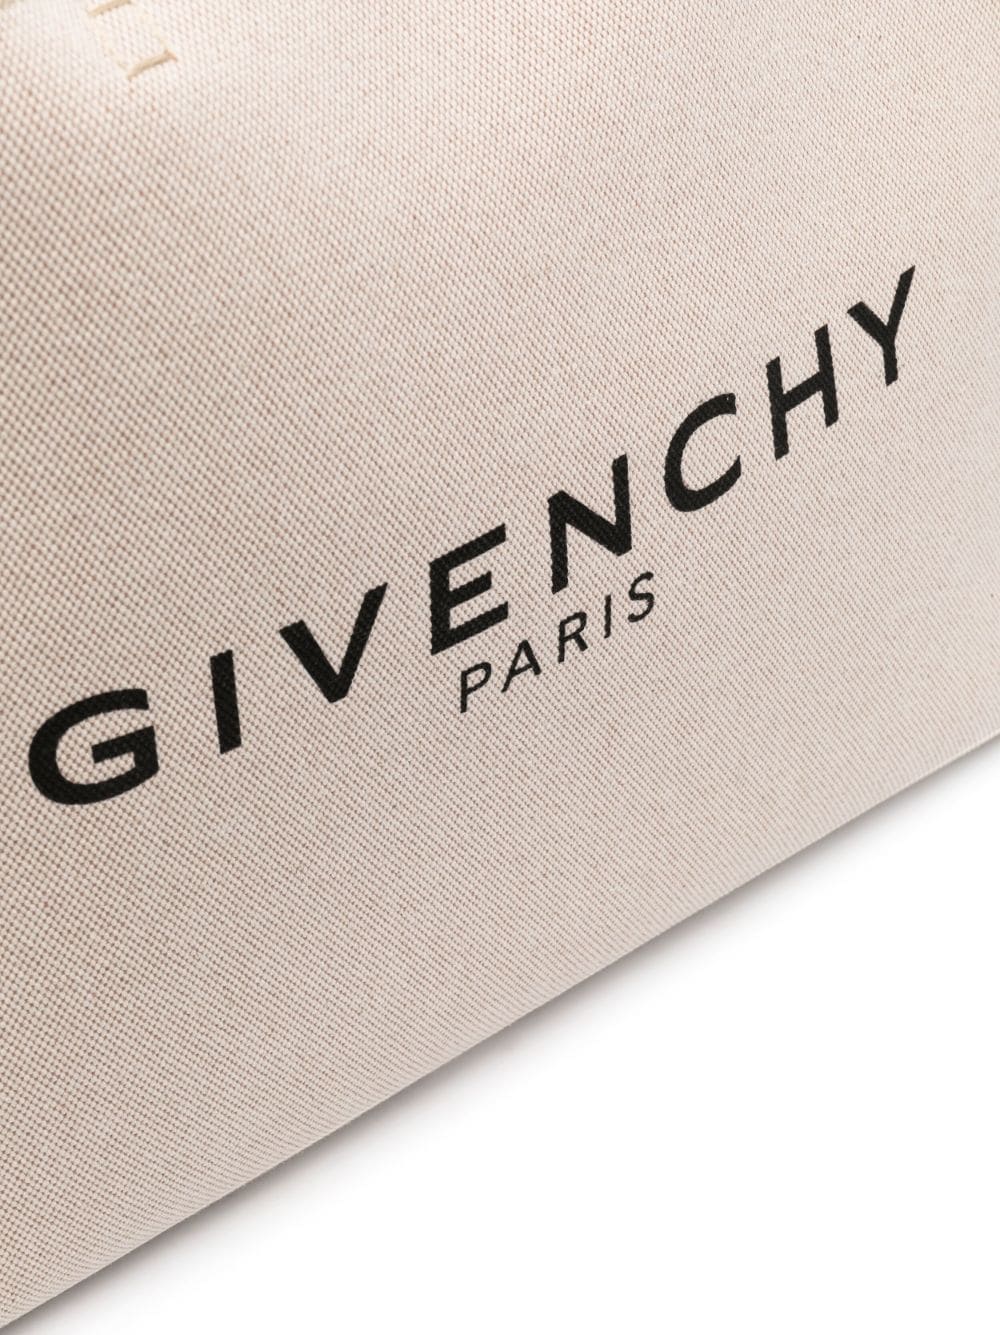 Shop Givenchy G-tote Handbag Large Shopping Handbag In Tan